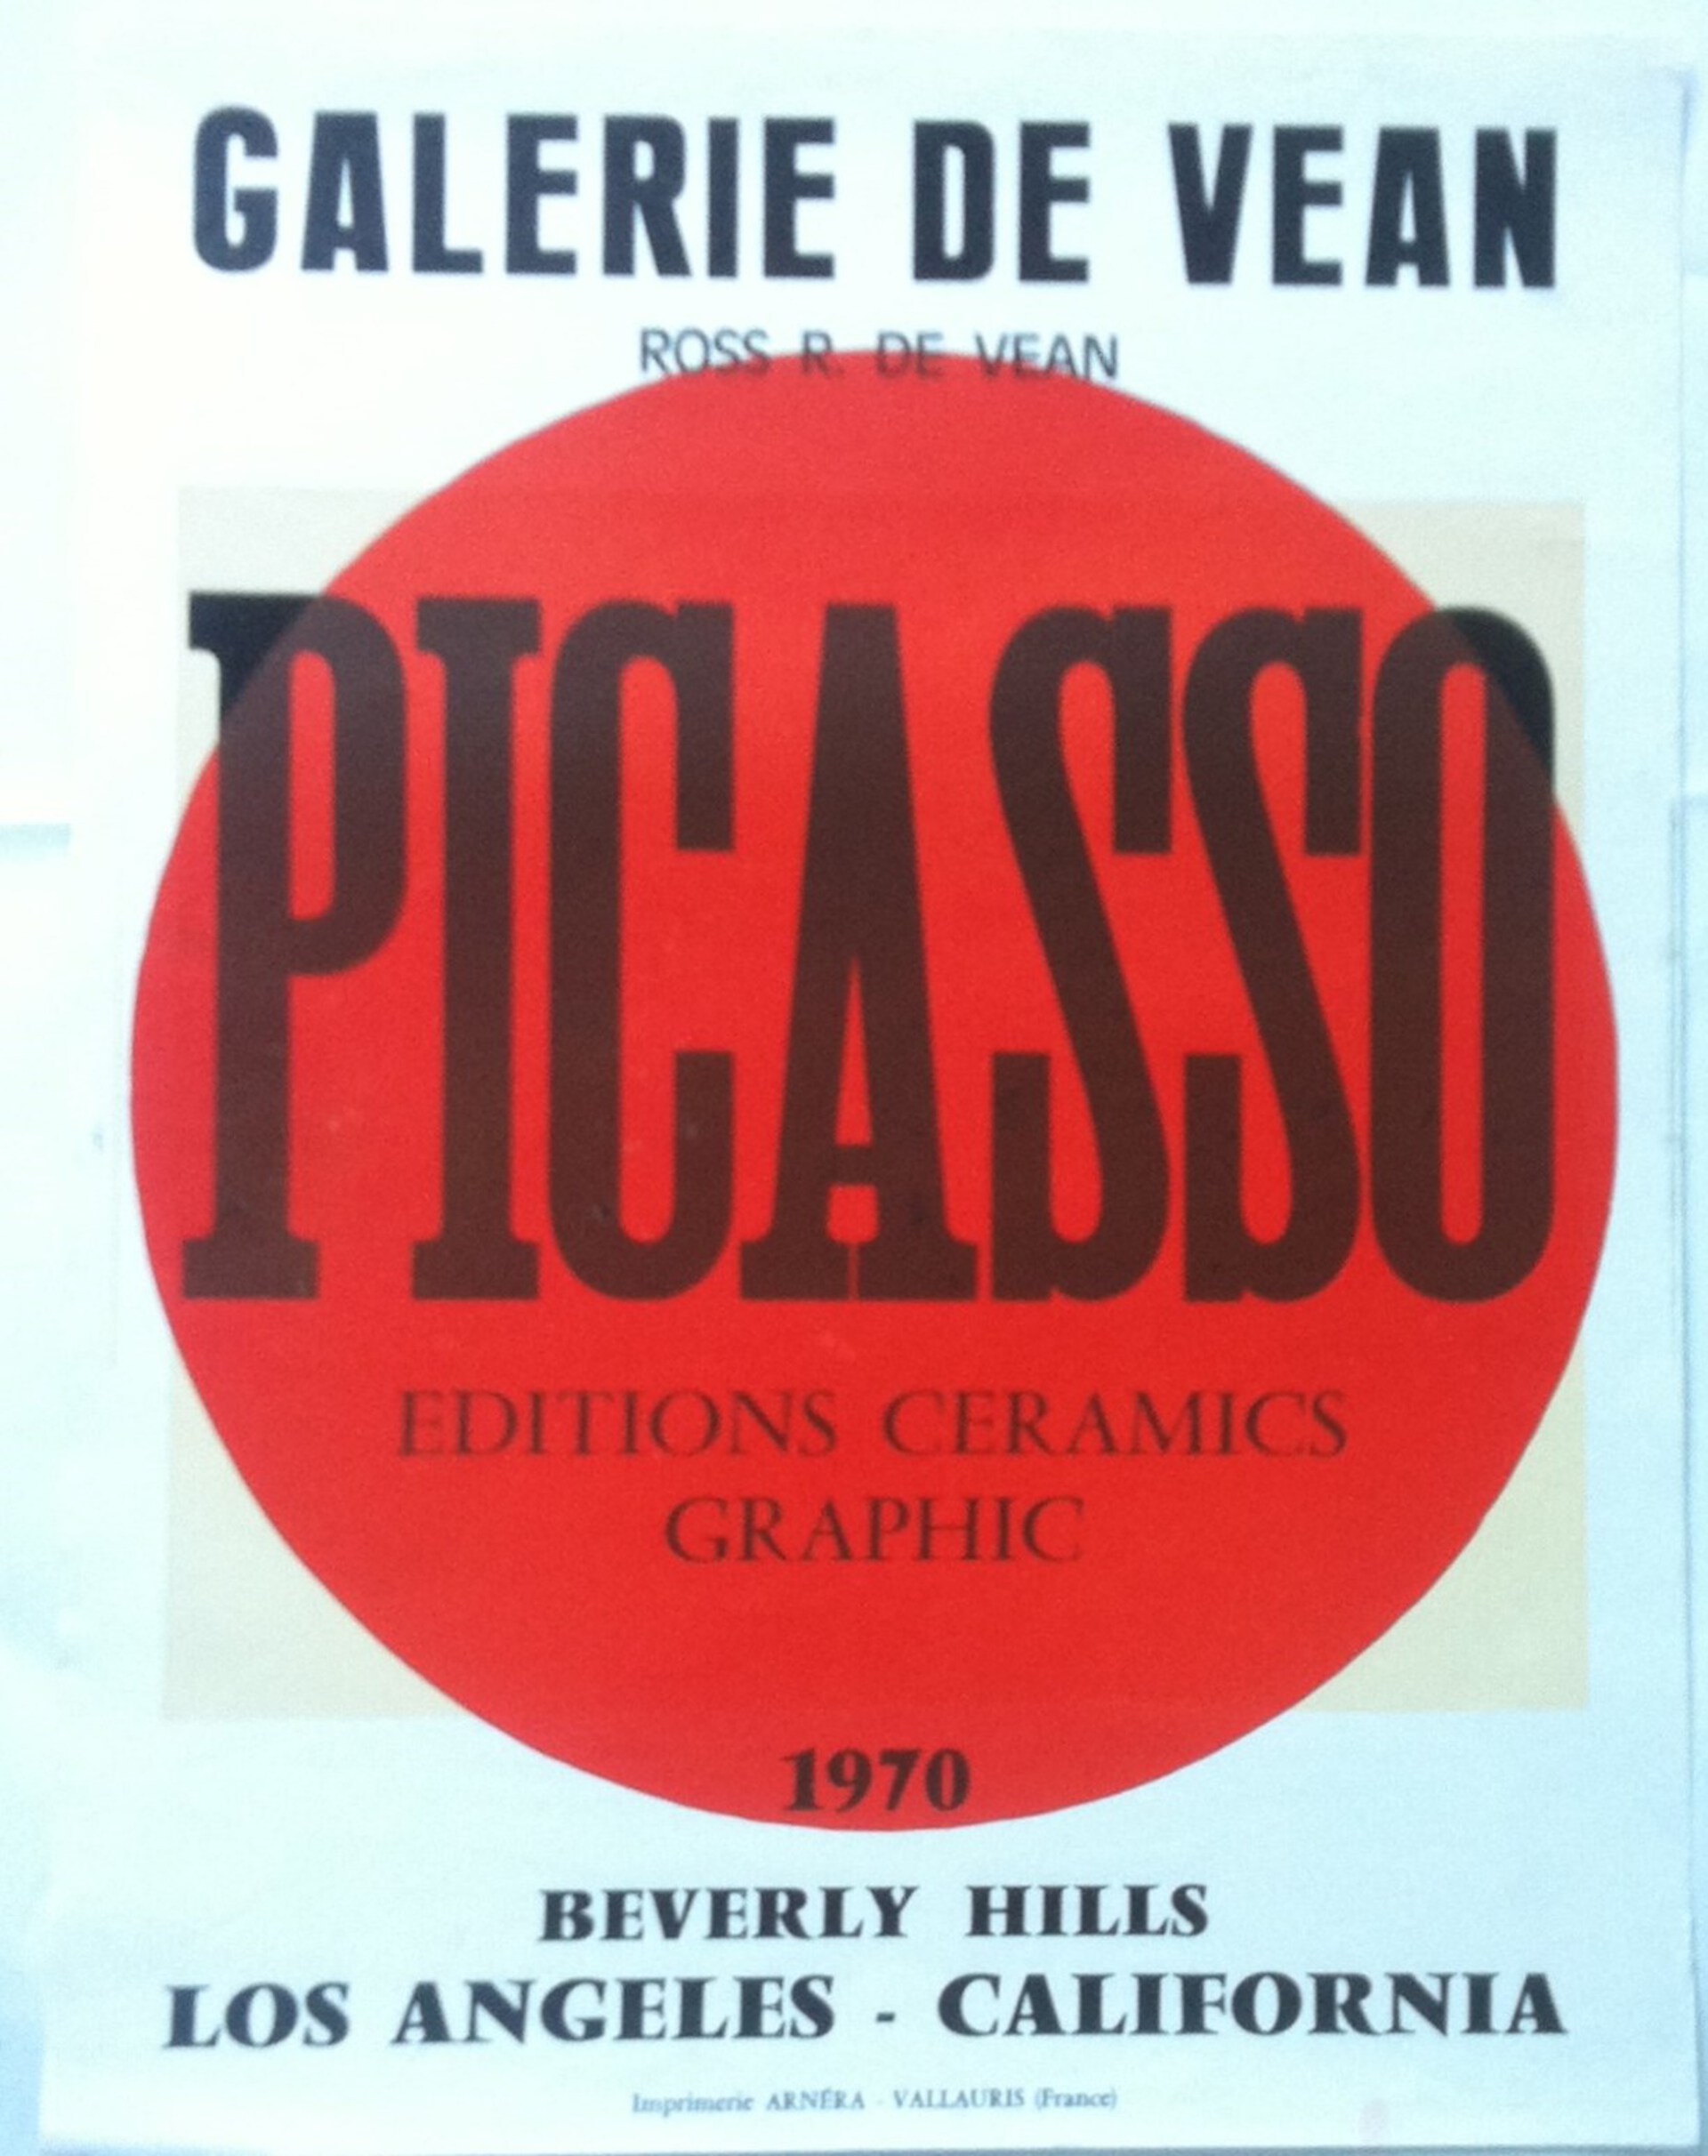 Picasso Editions Ceramics Graphic